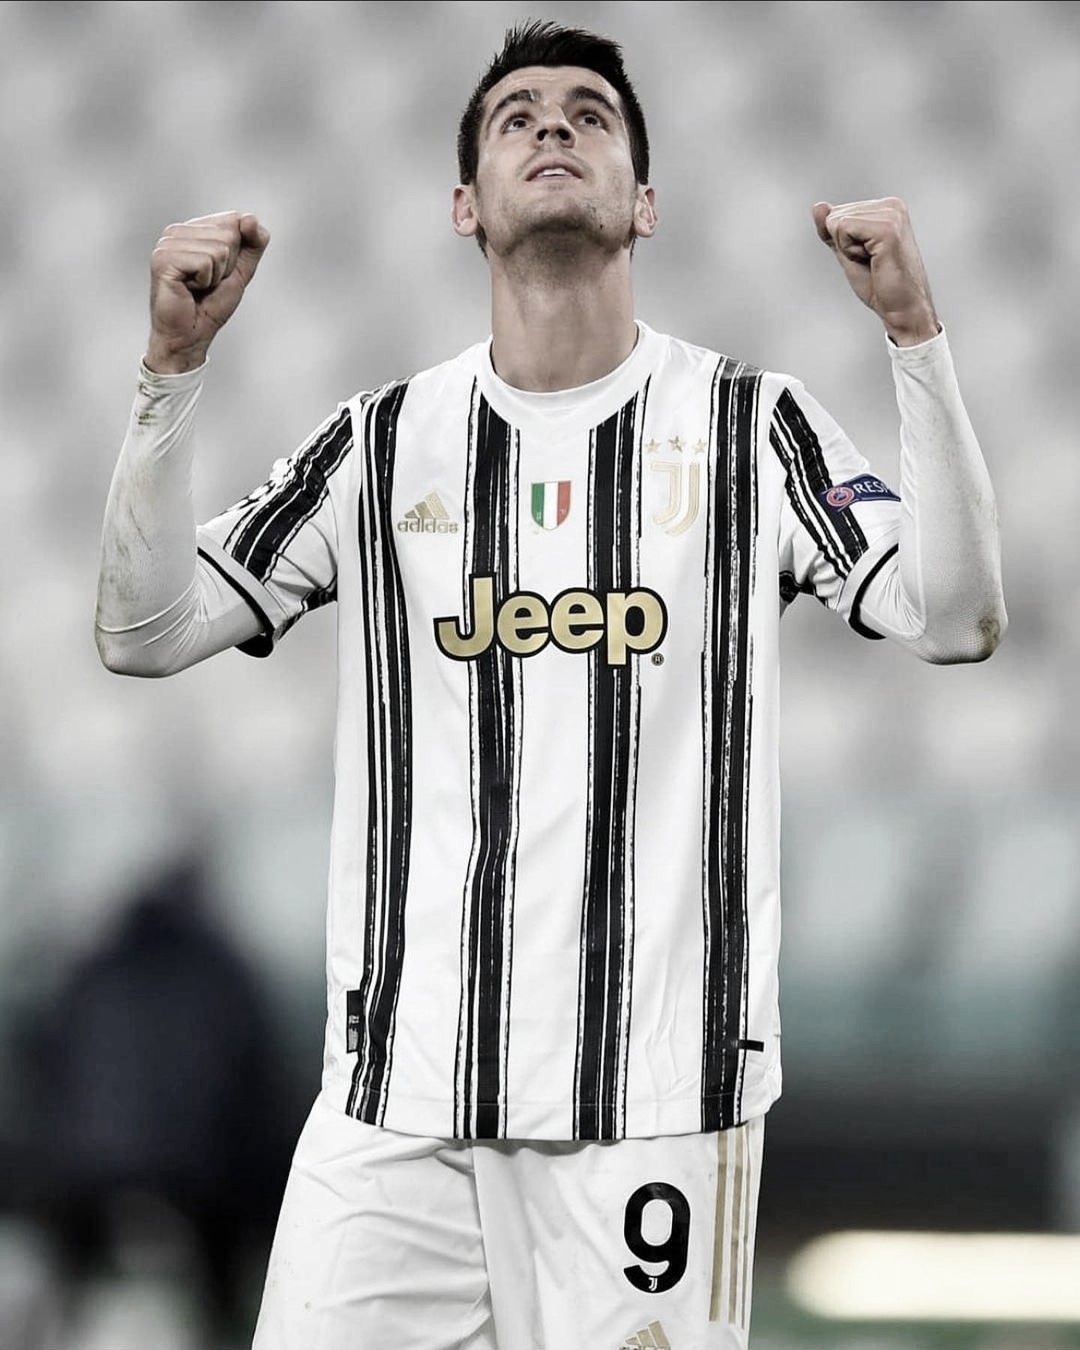 El agente de Morata: “Al final de
temporada la Juventus lo comprará del Atlético, estoy seguro".